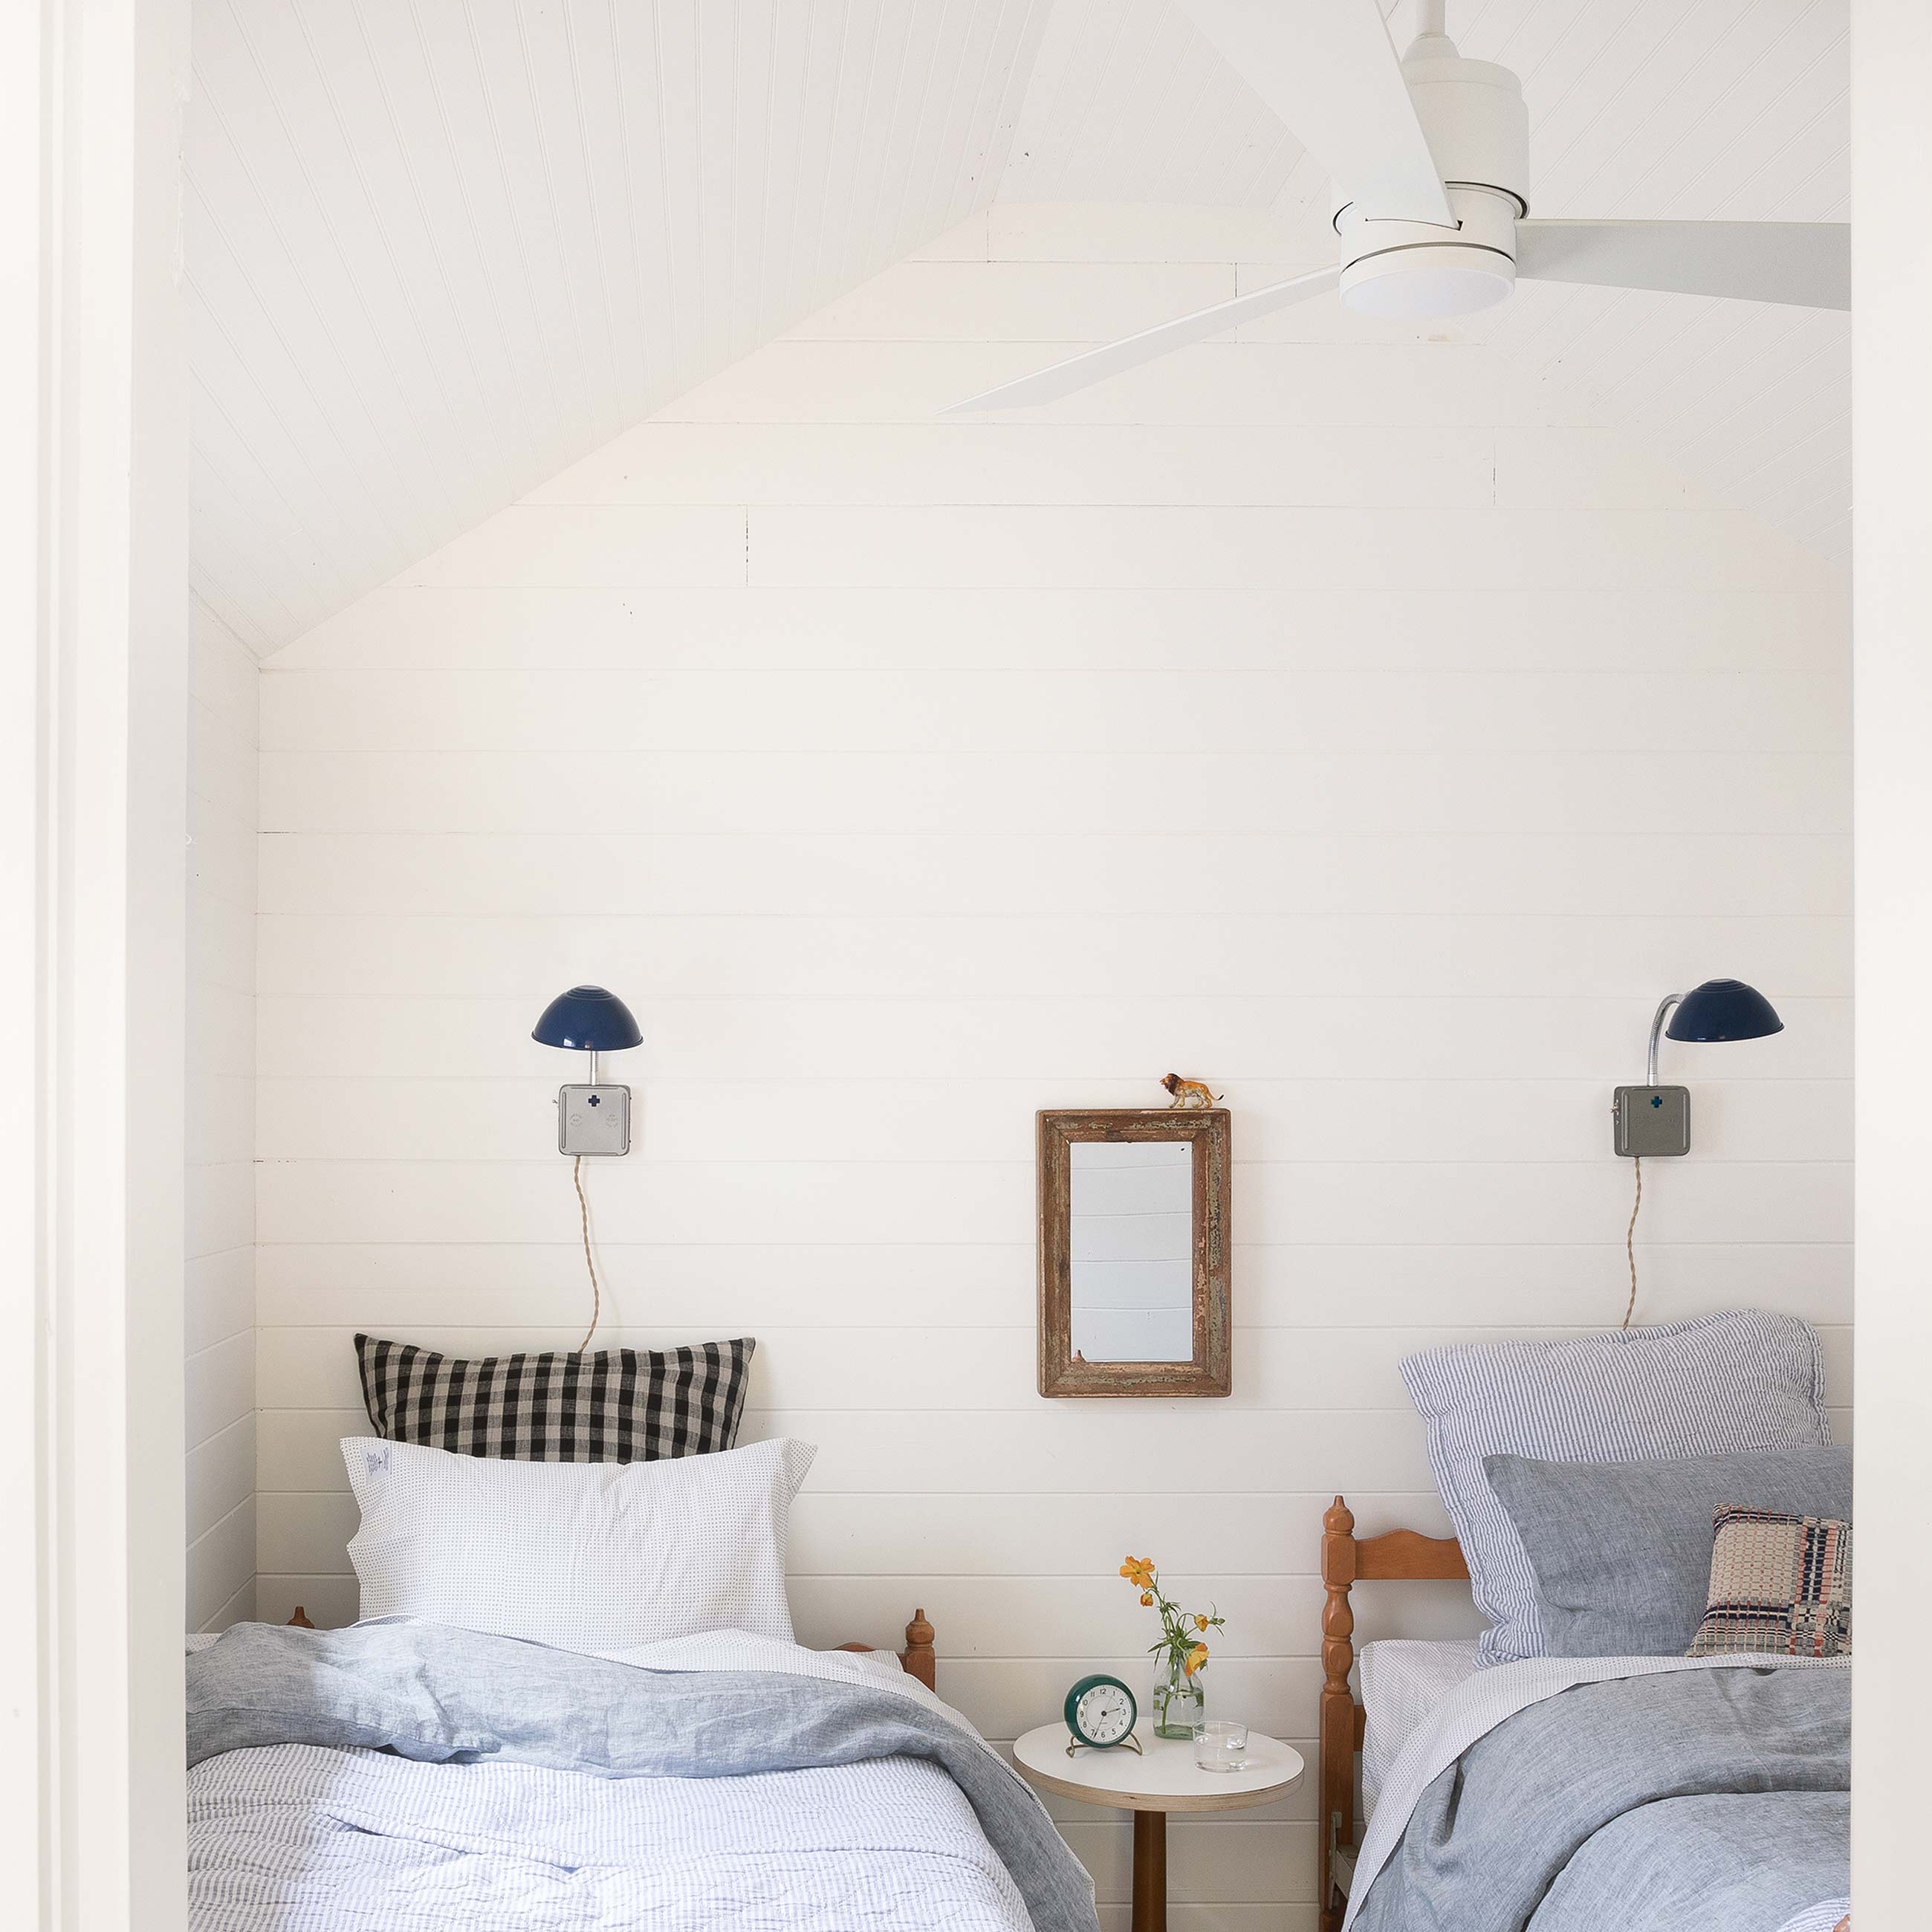 white modern ceiling fan in bedroom